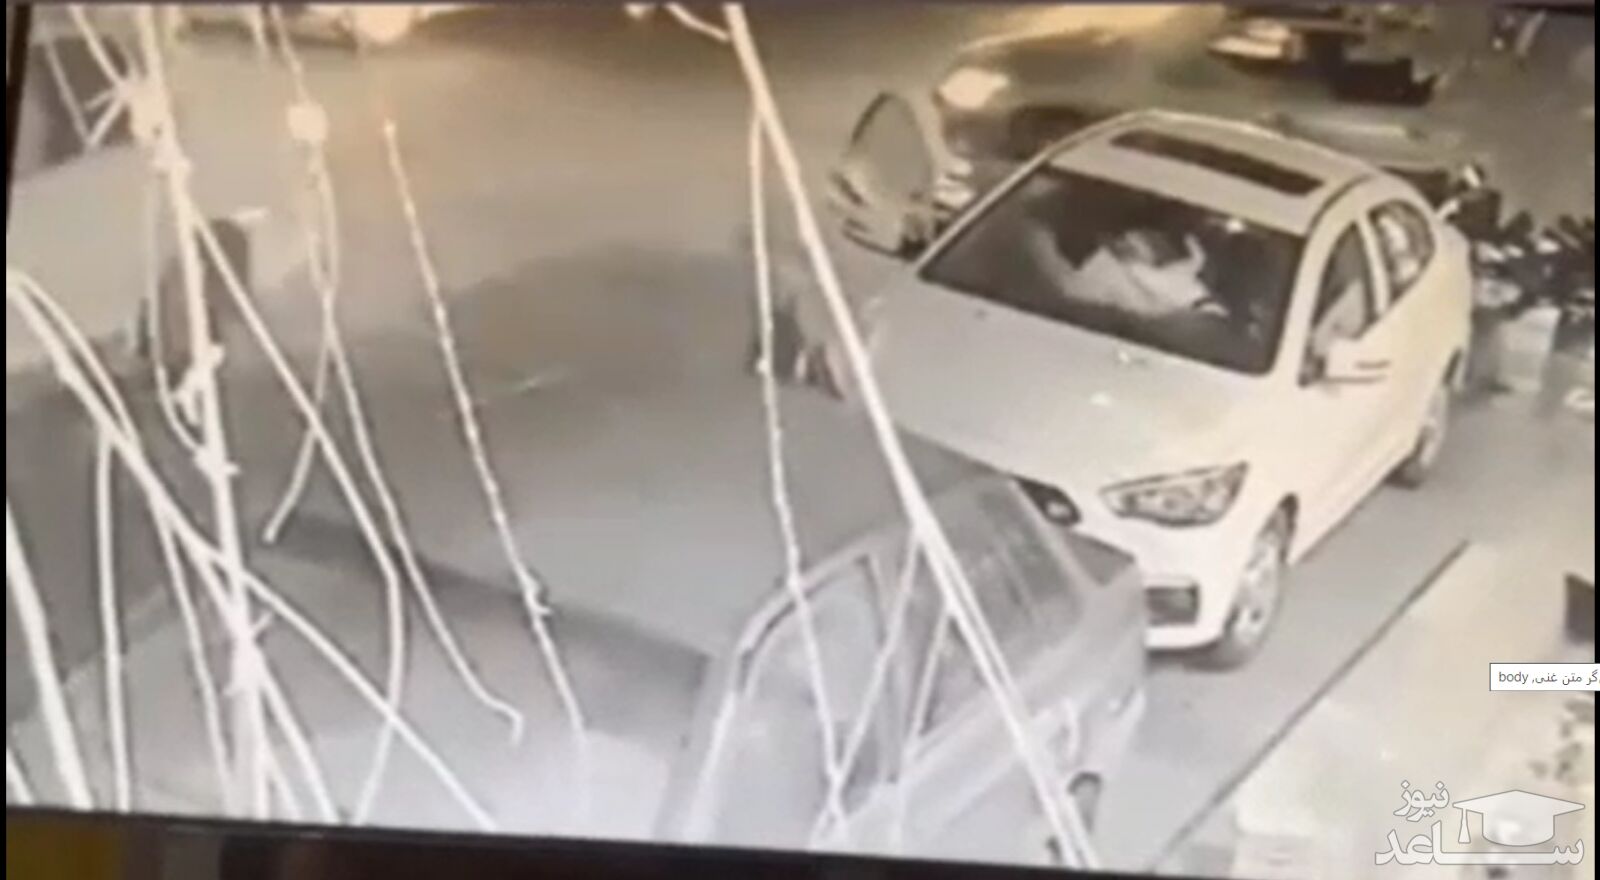 (فیلم) زورگیری وحشیانه از دختر جوان داخل خودرو در مجیدیه